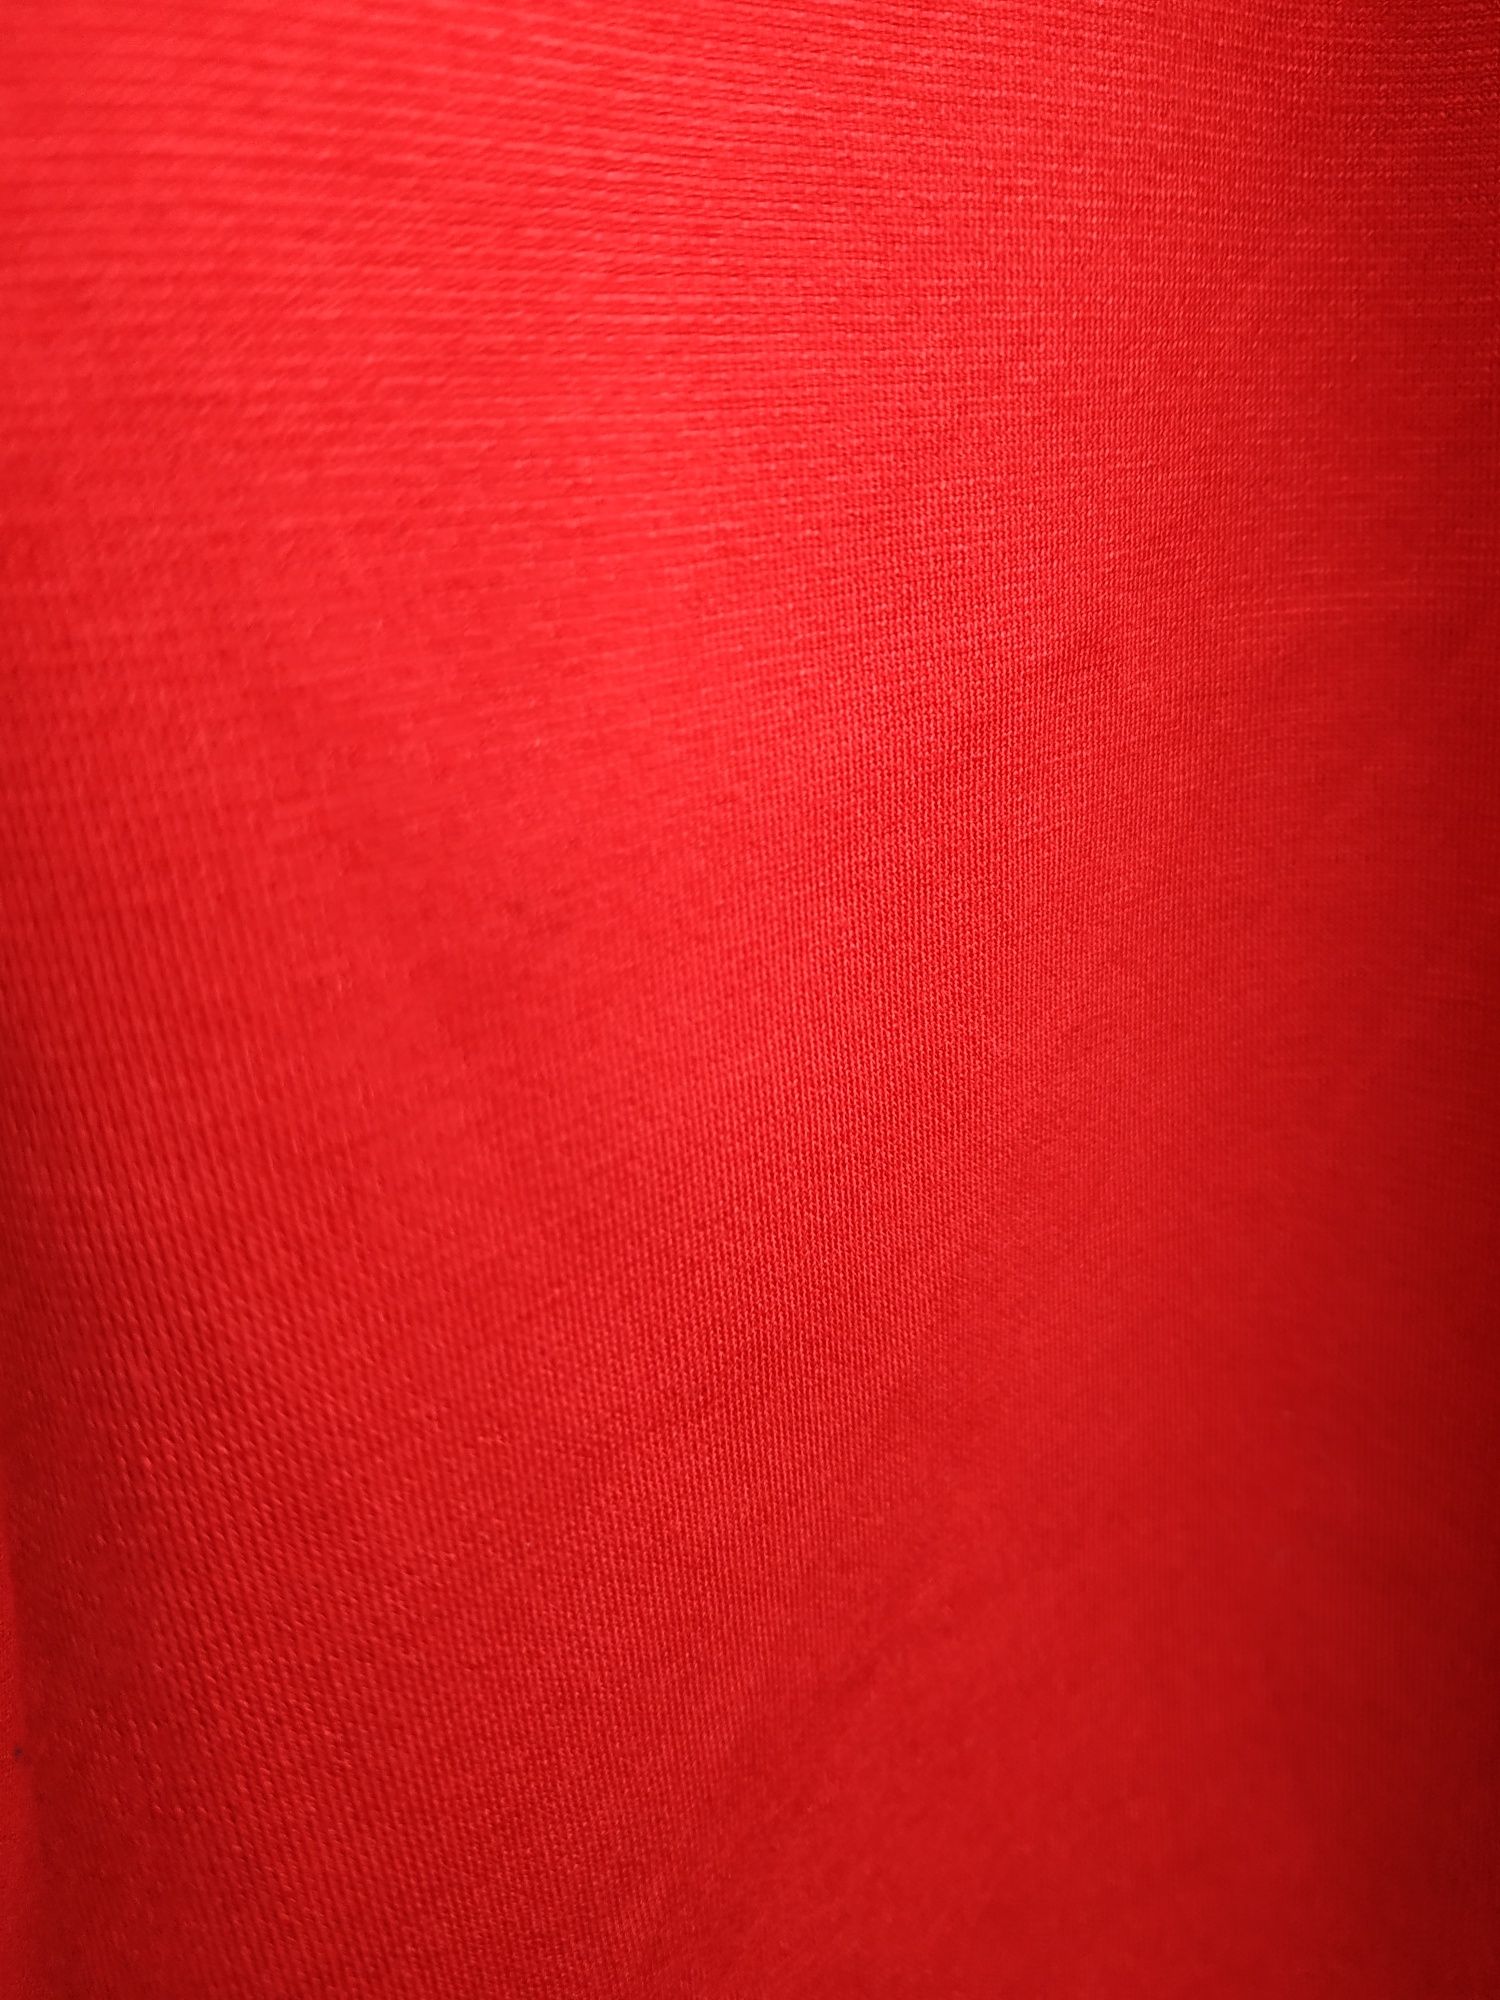 Платье красное длинное в пол